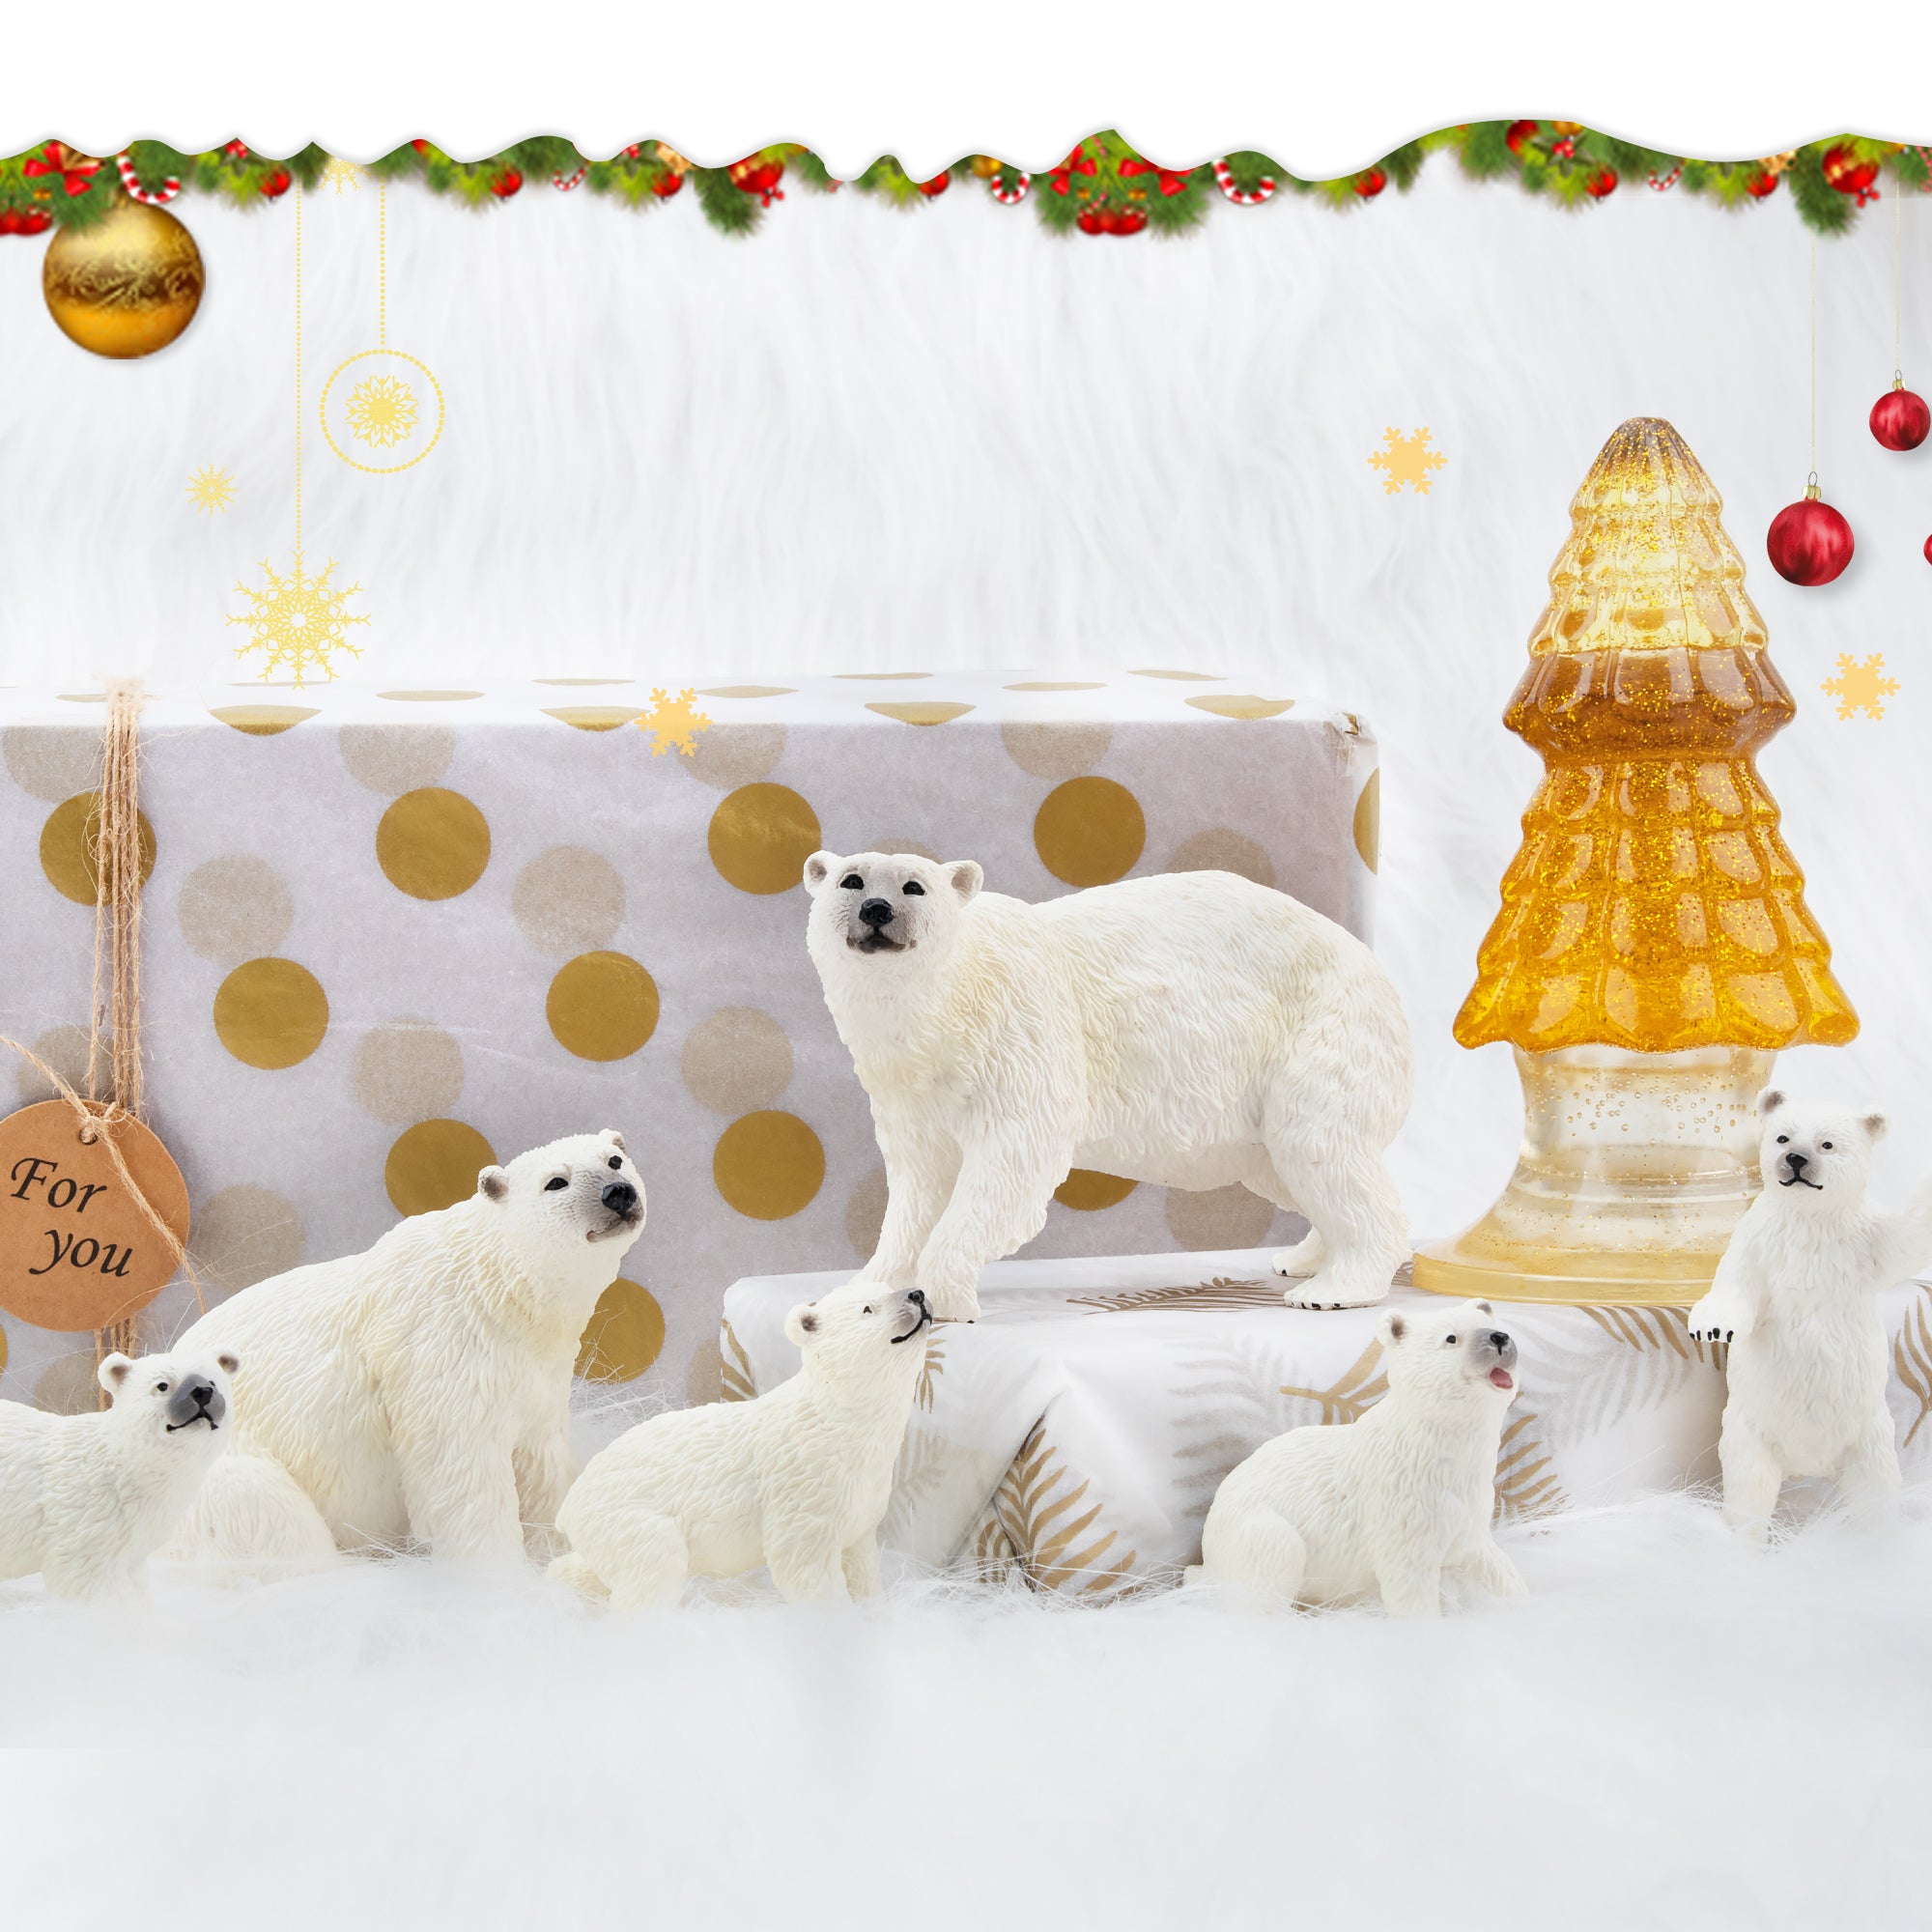 6-Piece Polar Bear Family Figurines Playset with Adult & Baby Polar Bear-scene